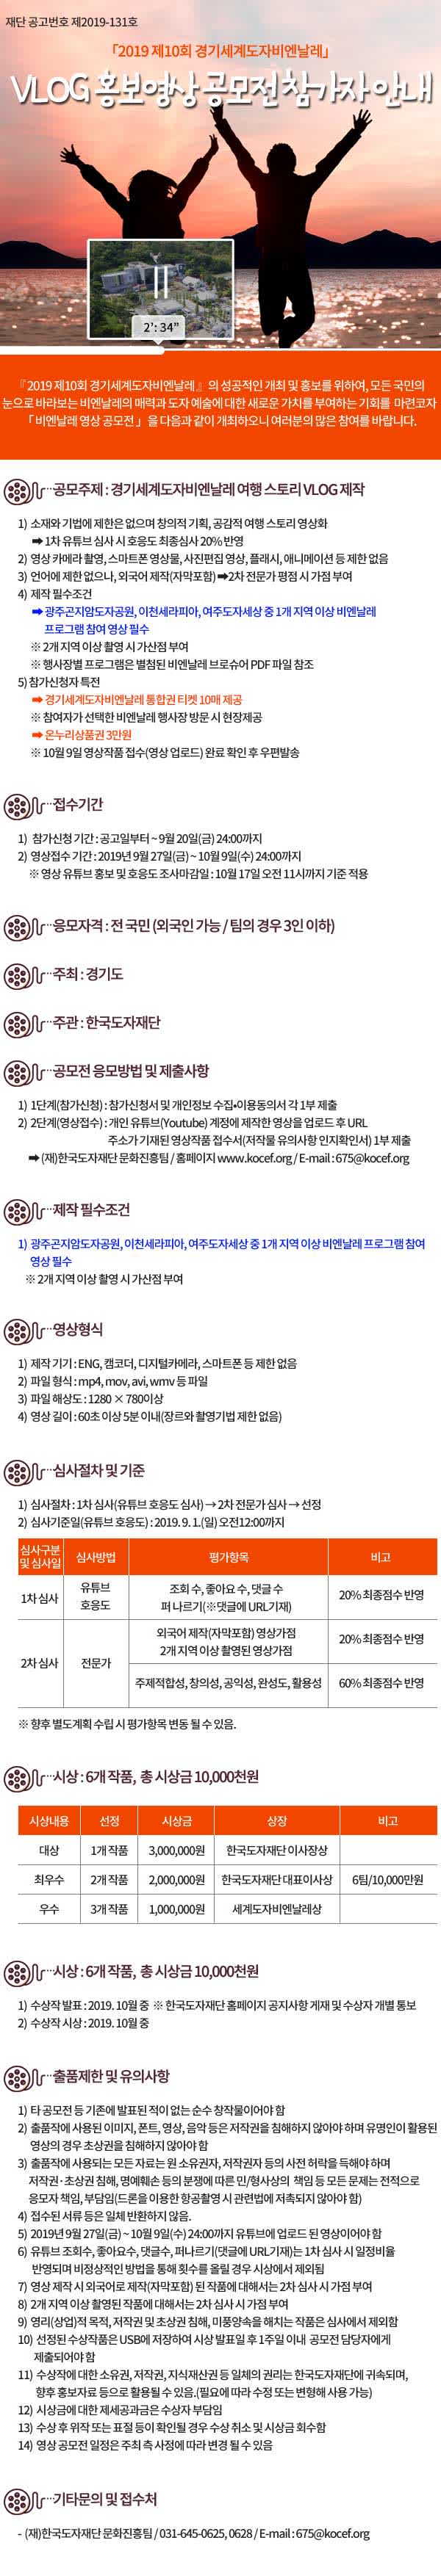 경기도 제10회 경기세계도자비엔날레 VLOG 홍보영상 공모전